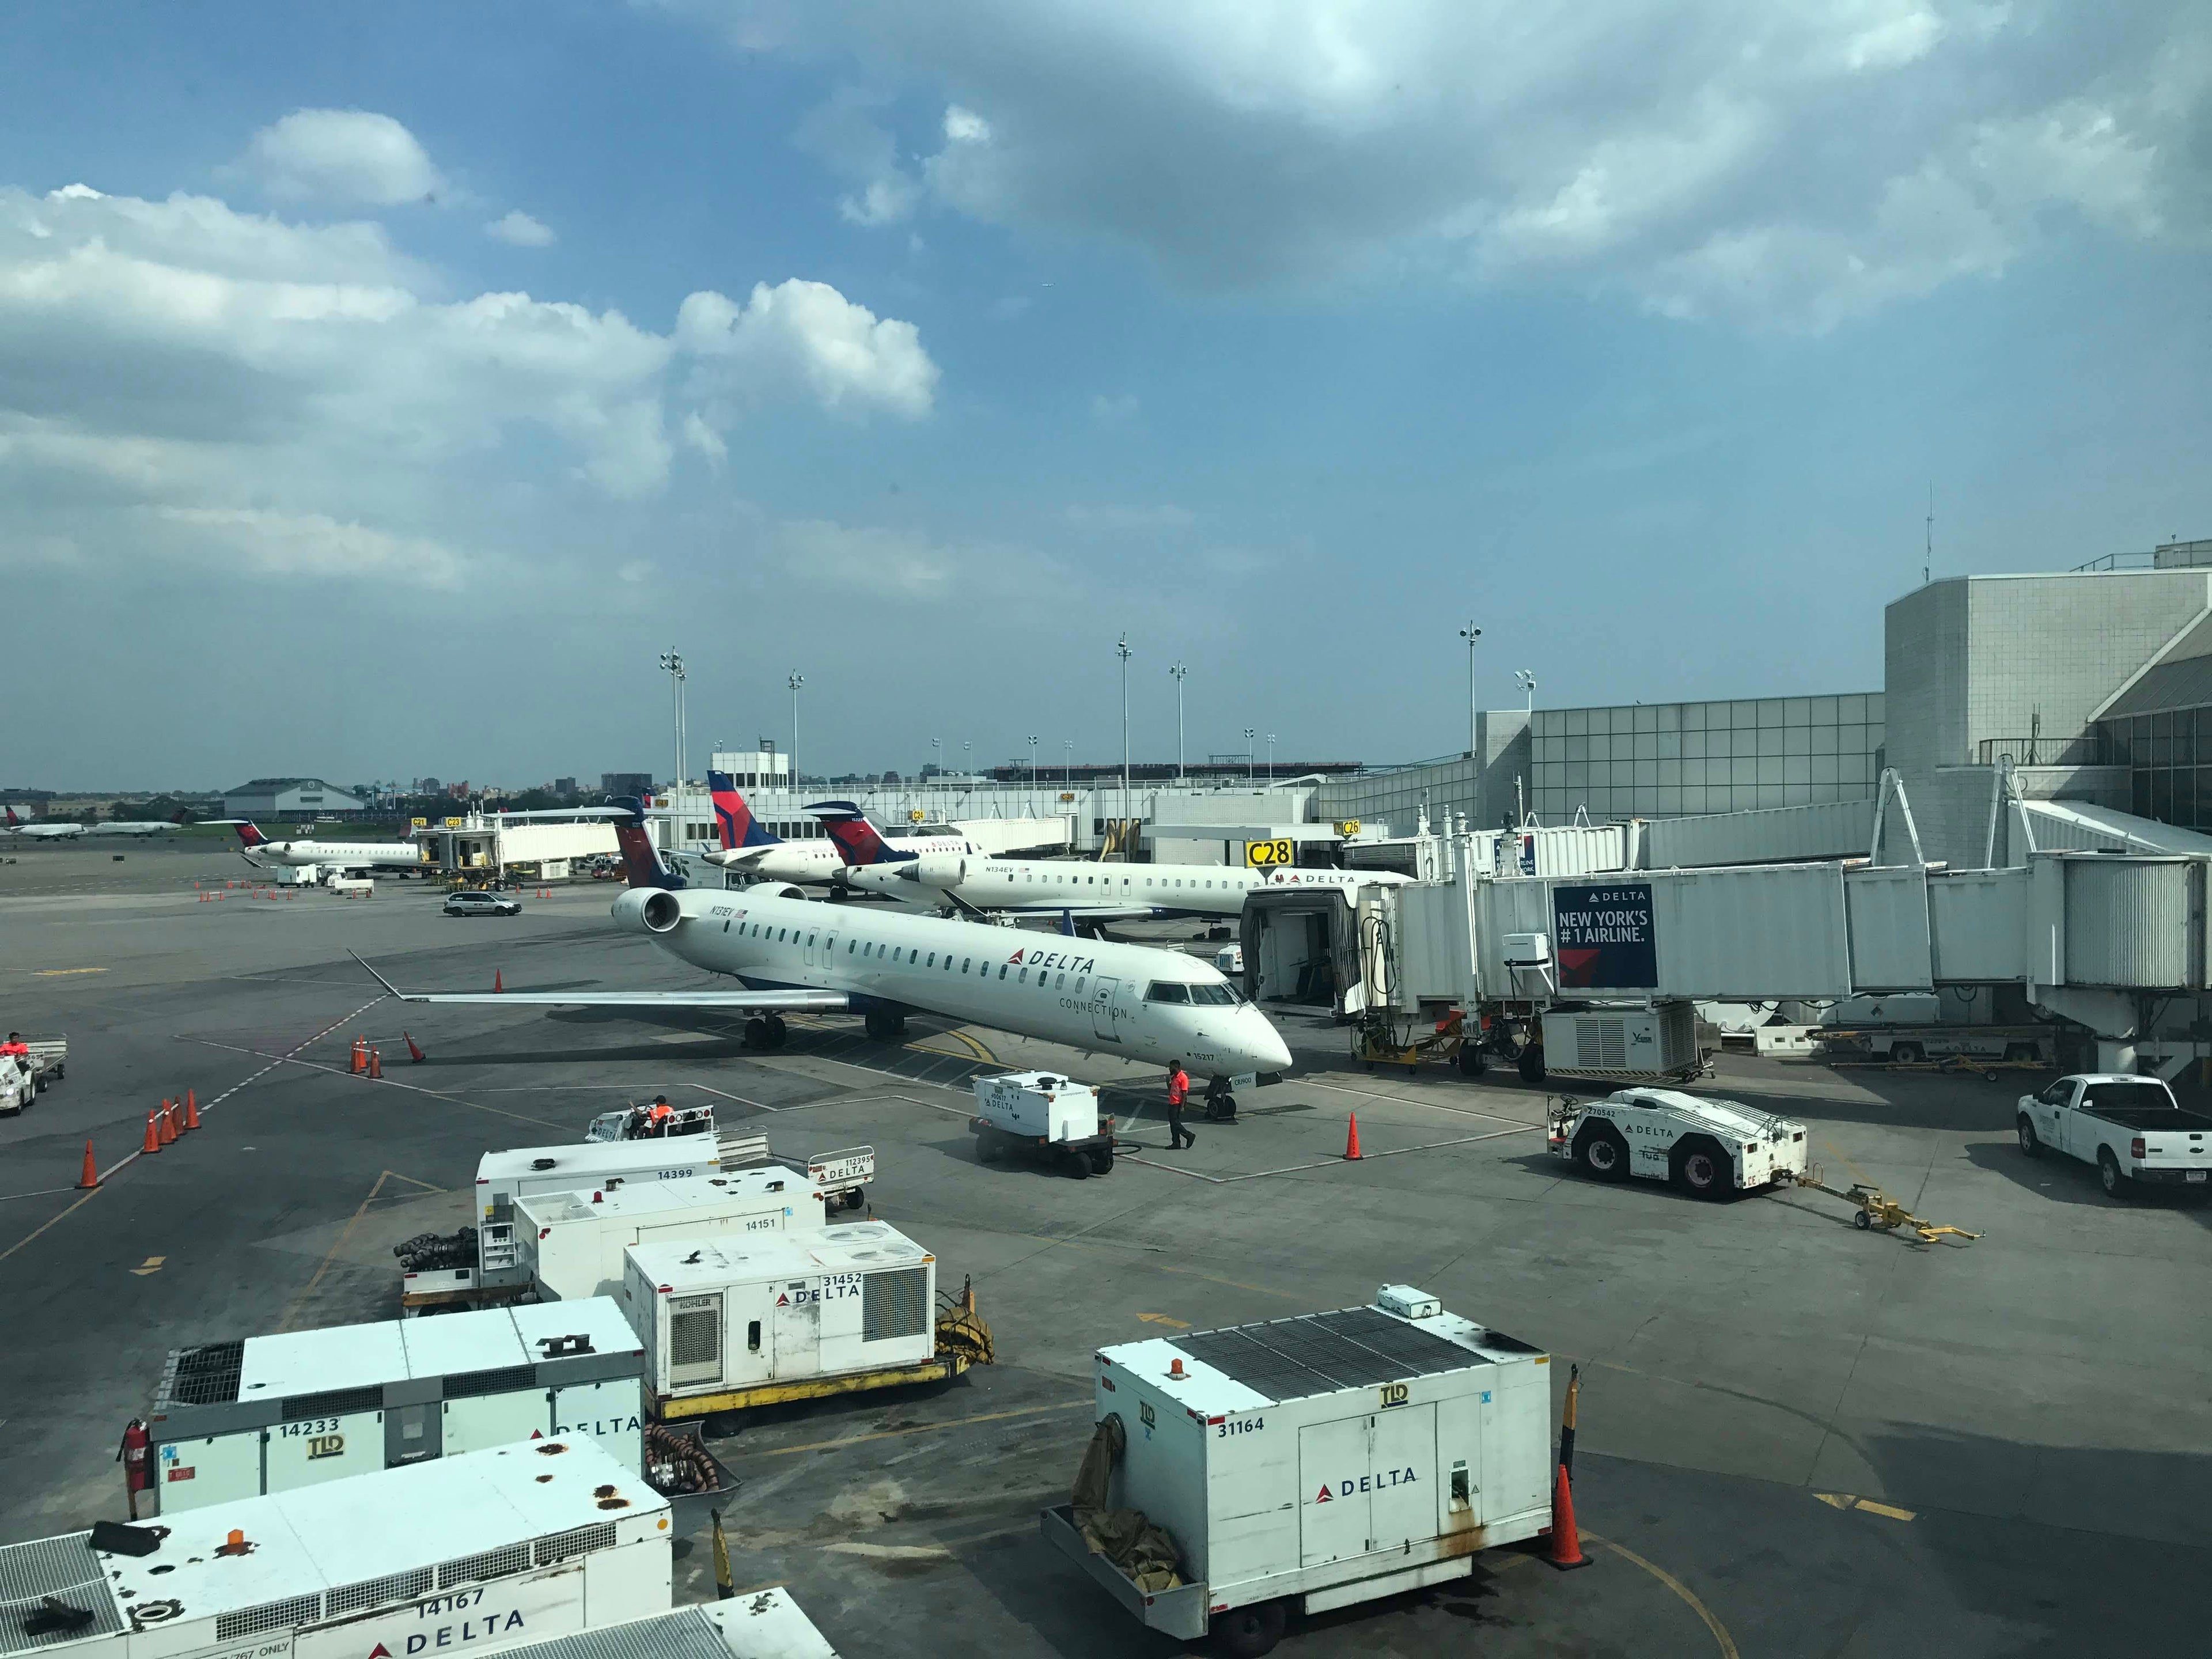 Delta Terminal C - LGA Airport in New York